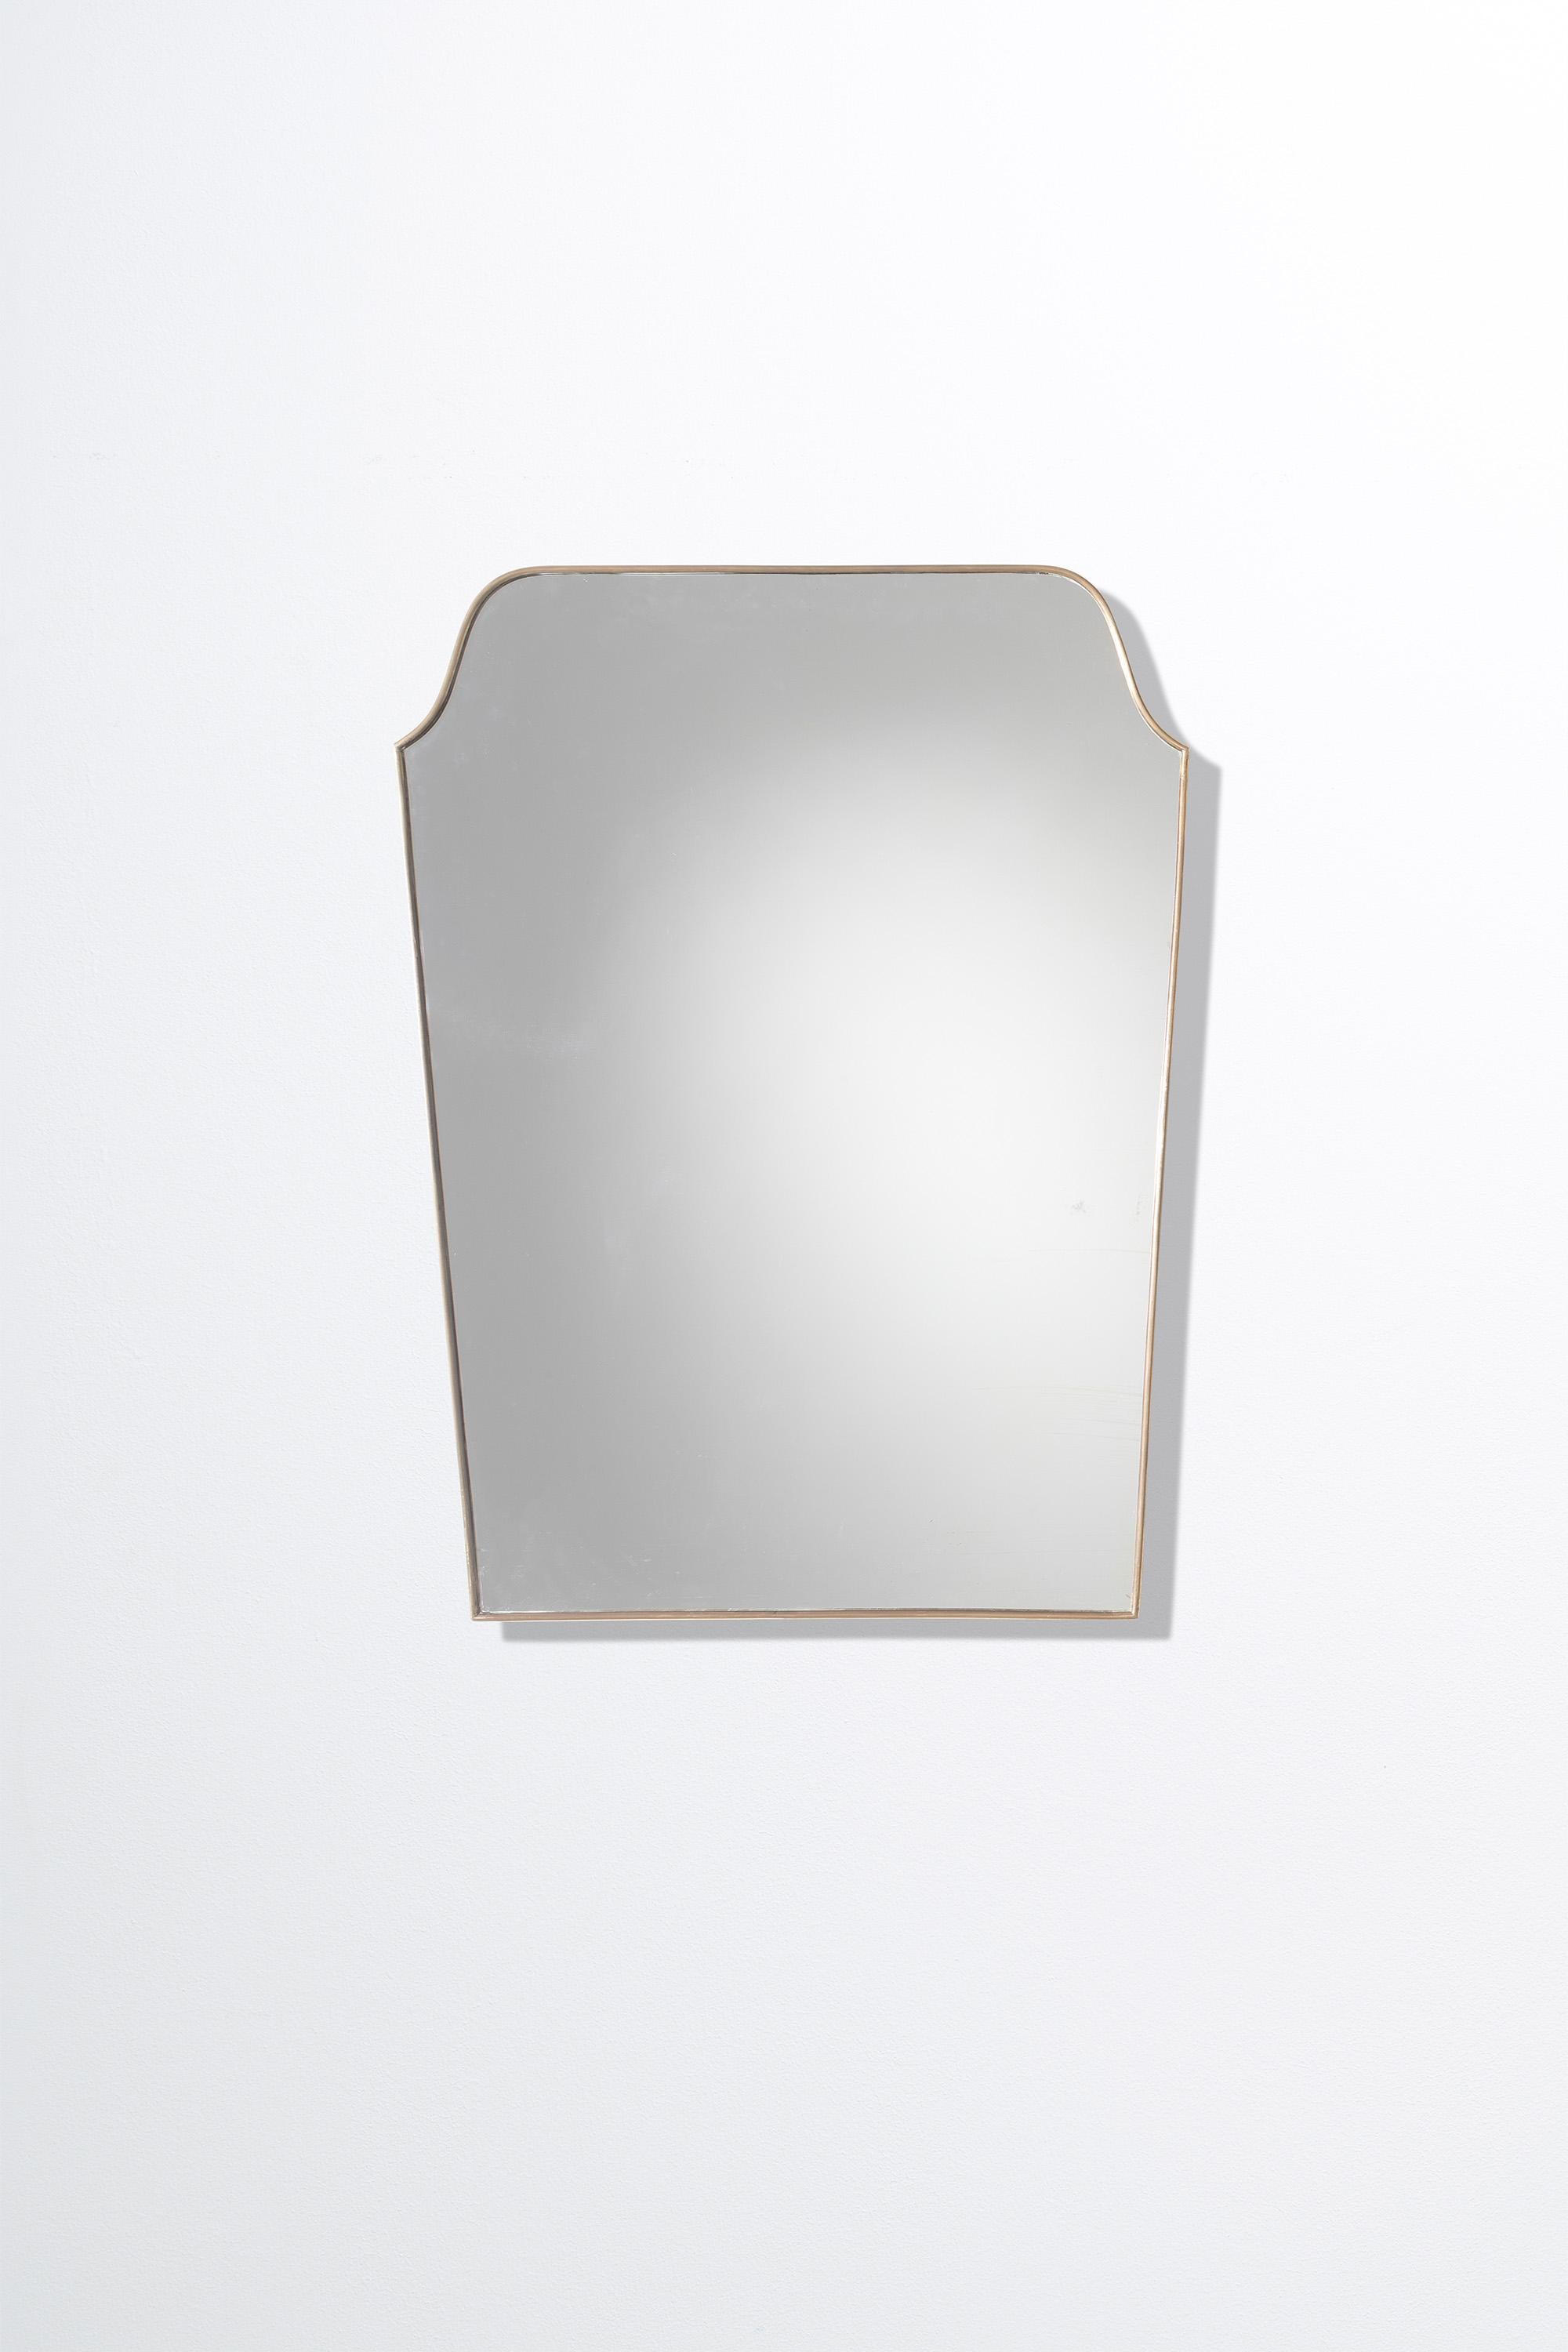 Eine fantastische Qualität 1950er Jahre Italienisch Messing gerahmt Spiegel von nützlichen Proportionen.

Der vergoldete Messingrahmen hat insgesamt eine schöne Patina. Die Original-Spiegelplatte ist in sehr gutem Zustand, ohne sichtbare Chips oder